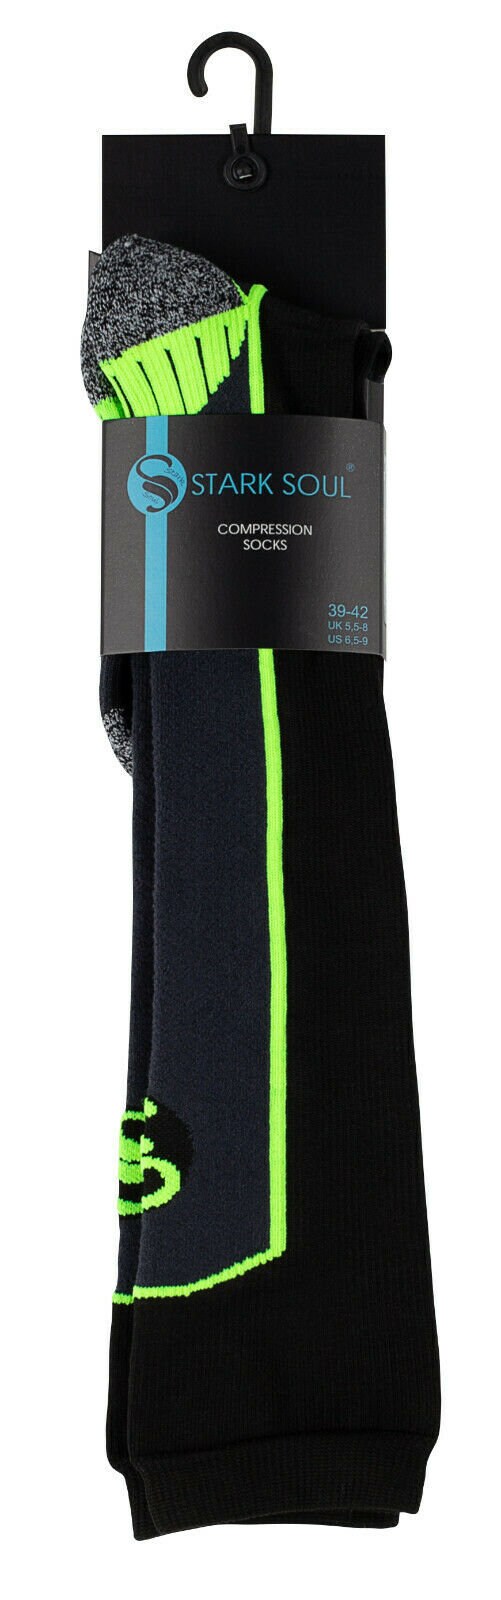 Unisex Knee-high Compression Socks Graduated 12-14 mmHg Half | Etsy